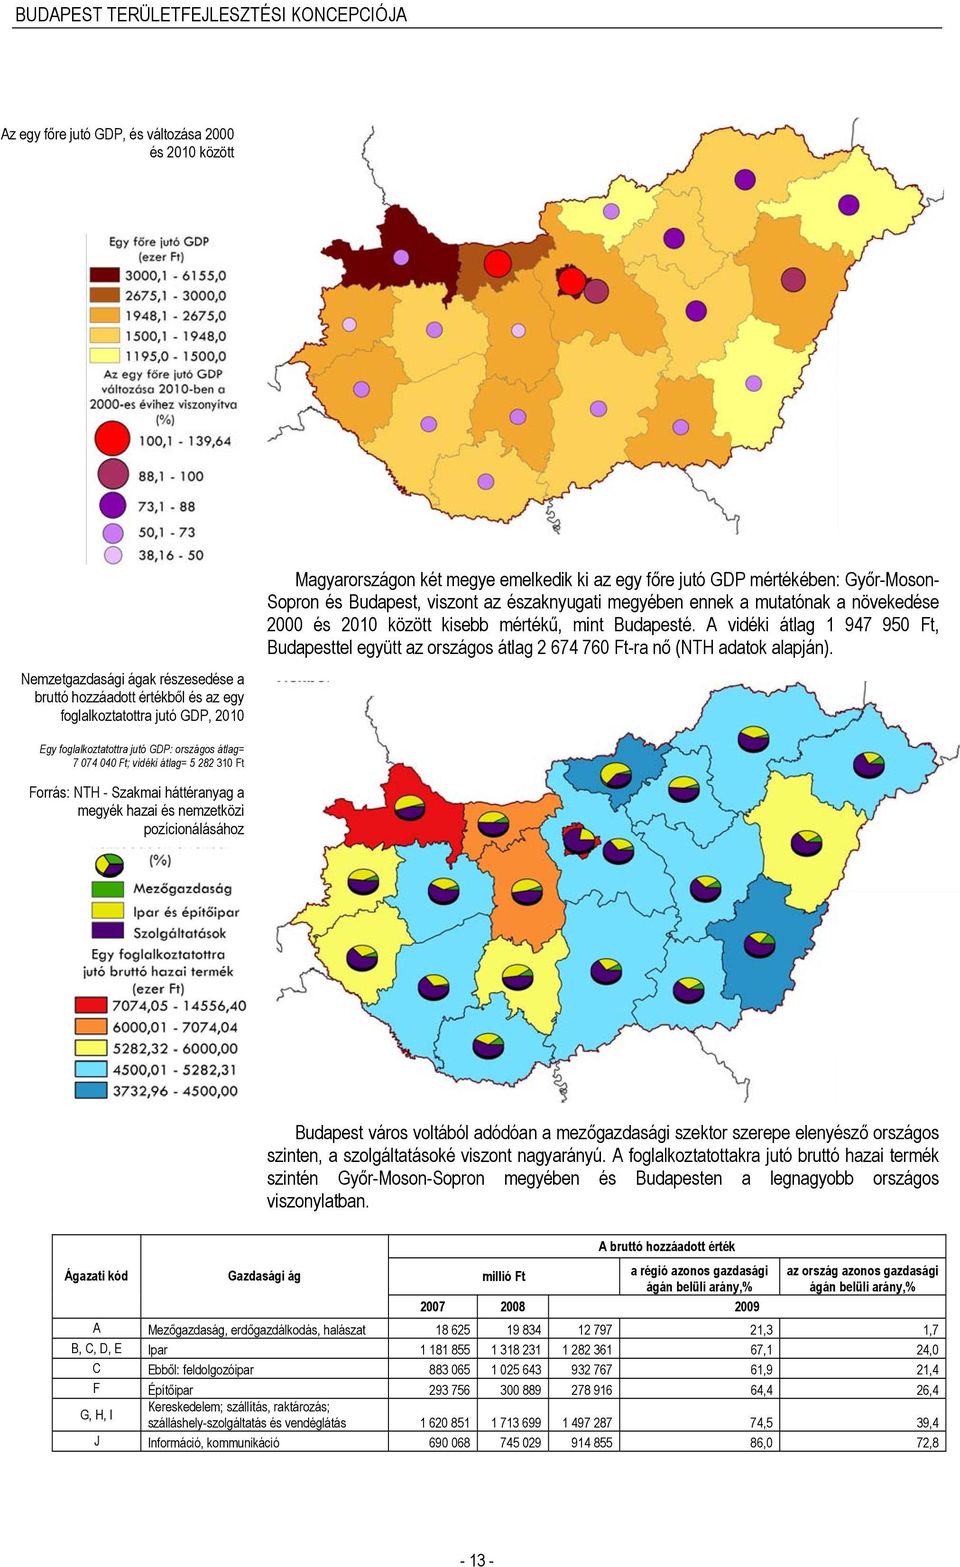 A vidéki átlag 1 947 950 Ft, Budapesttel együtt az országos átlag 2 674 760 Ft-ra nő (NTH adatok alapján).